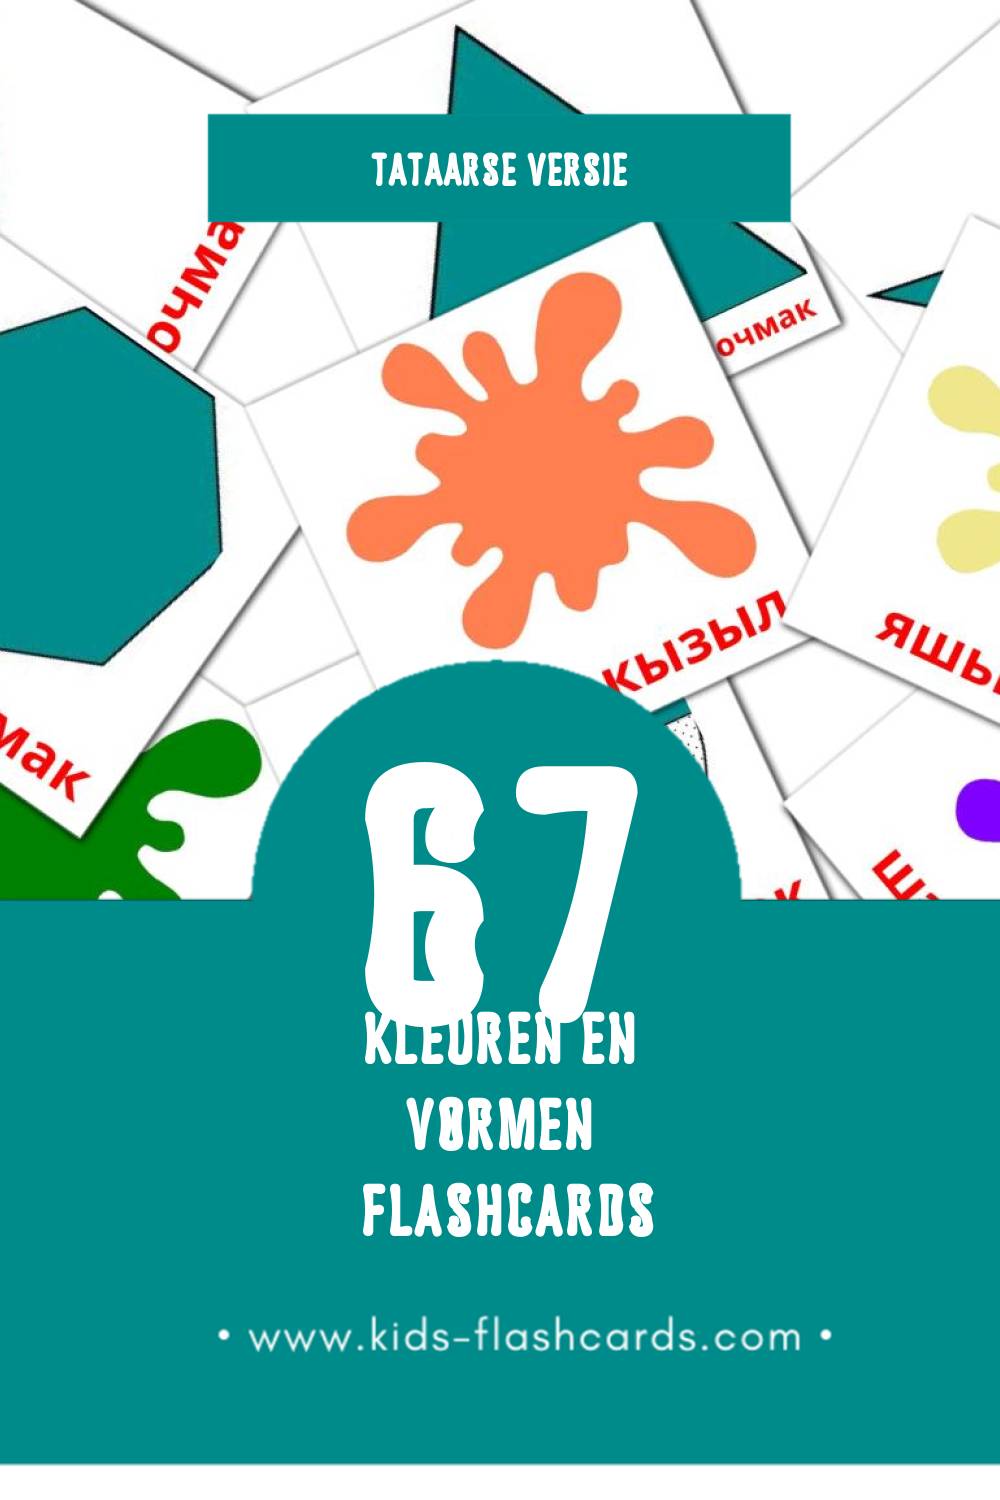 Visuele Төсләр һәм формалар Flashcards voor Kleuters (67 kaarten in het Tataars)